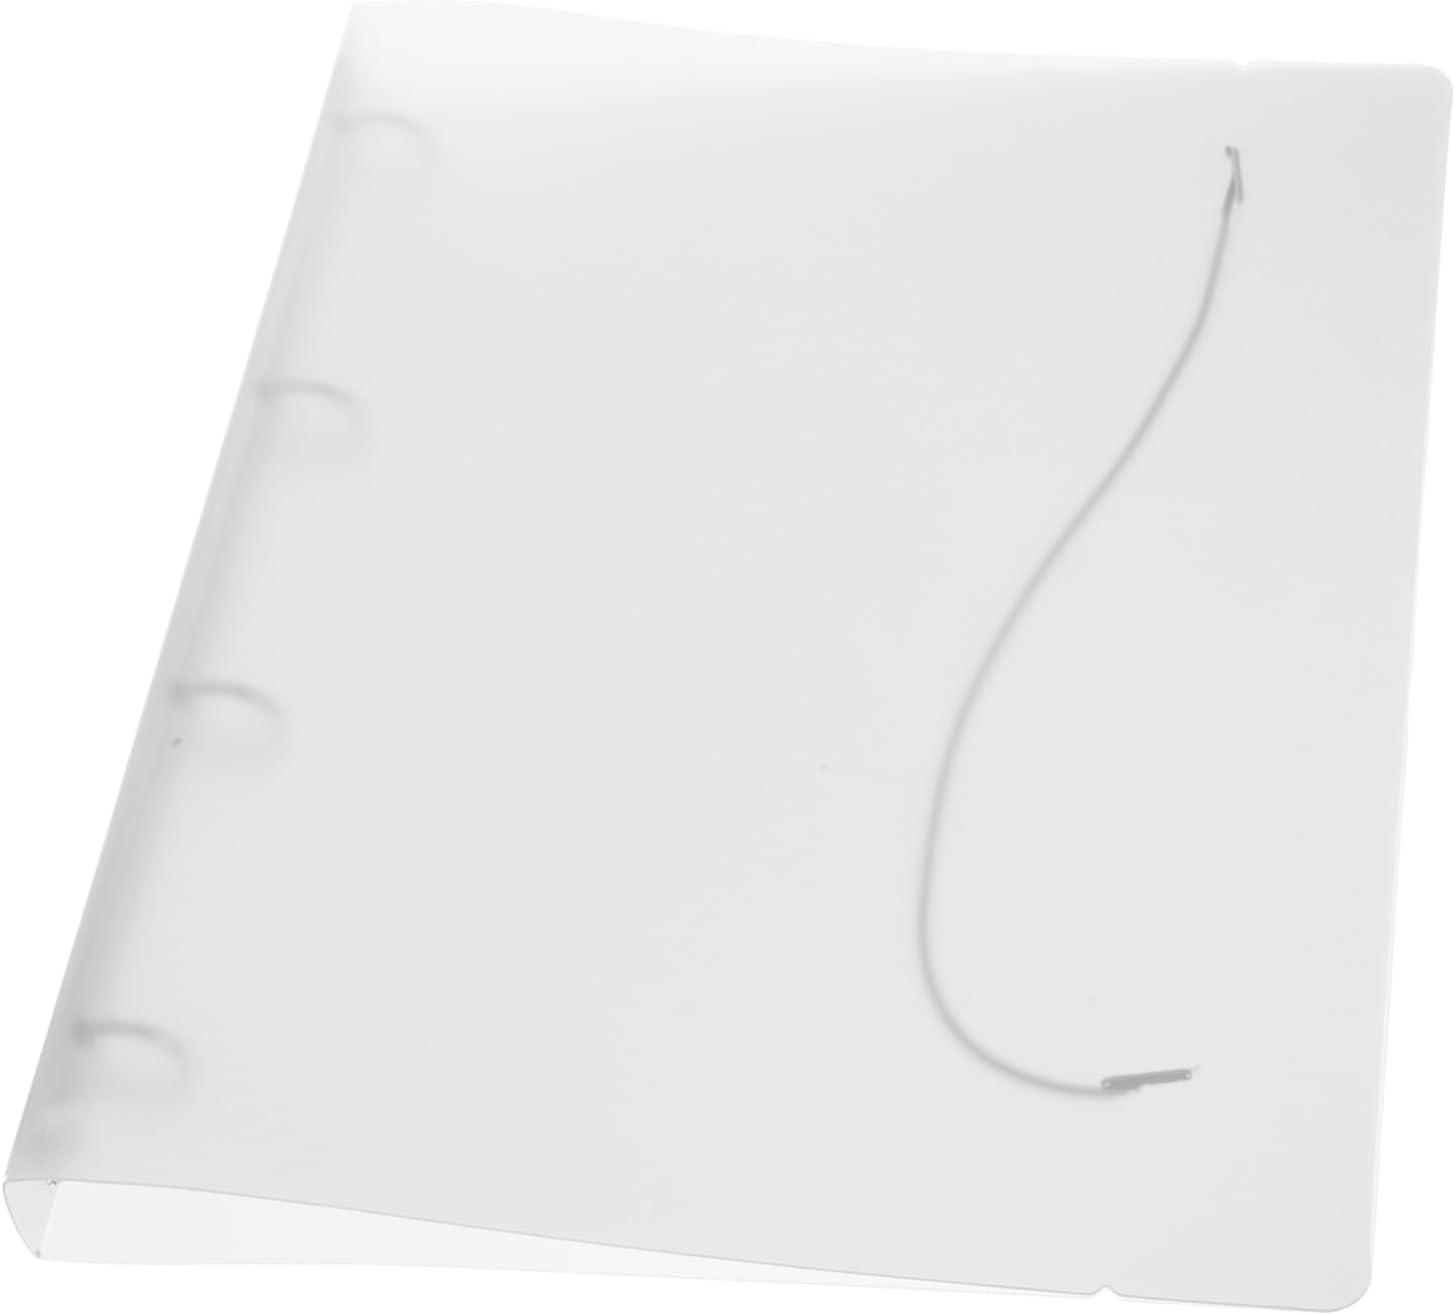 ohphcall file folders clear binder strap on binder clips plastic file organizer file holder folder bag pp a4 